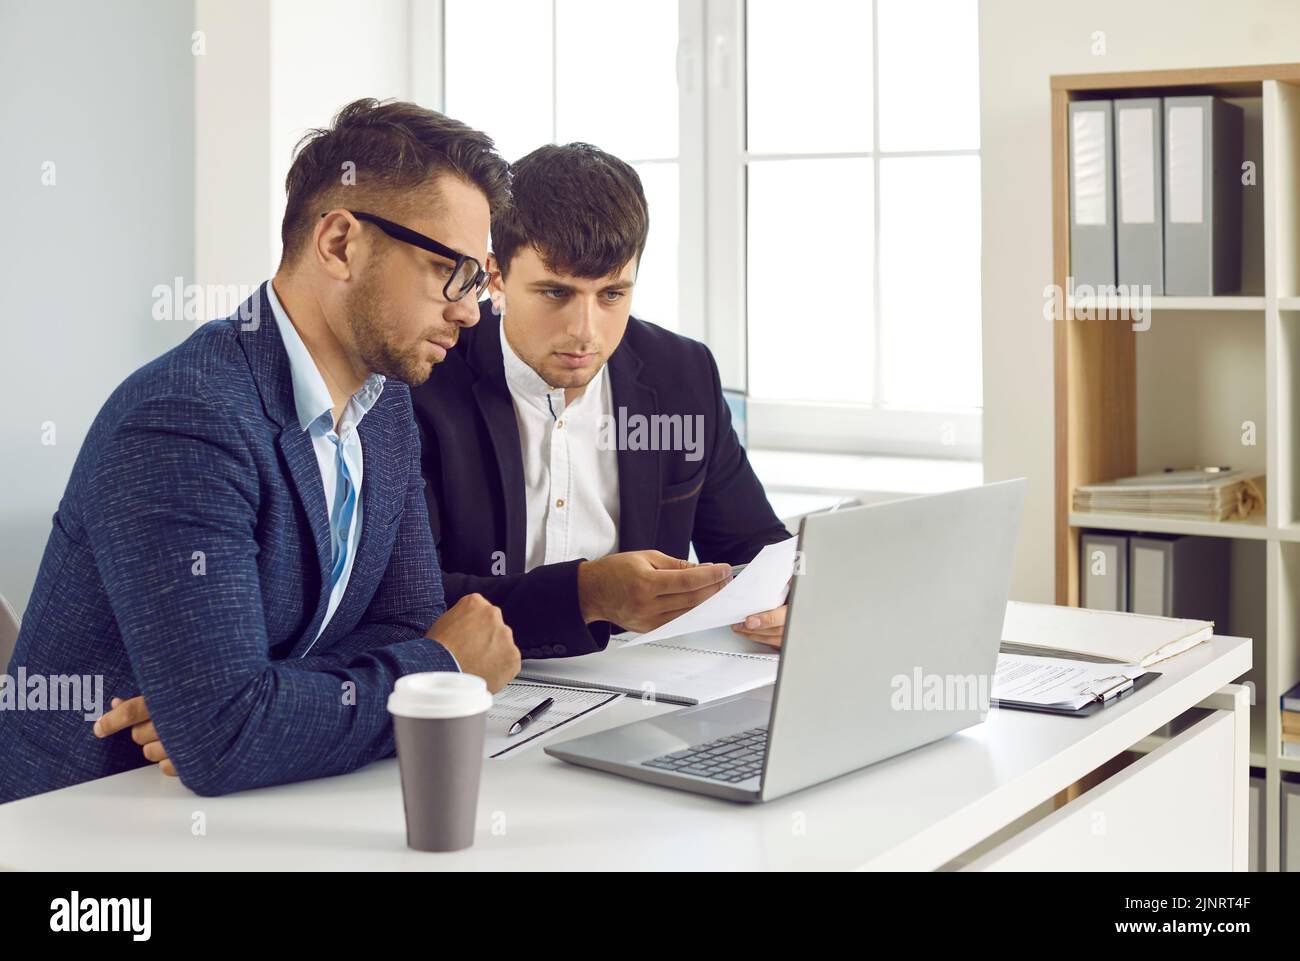 Dos jóvenes serios sentados en un escritorio de la oficina y mirando su ordenador portátil juntos Foto de stock